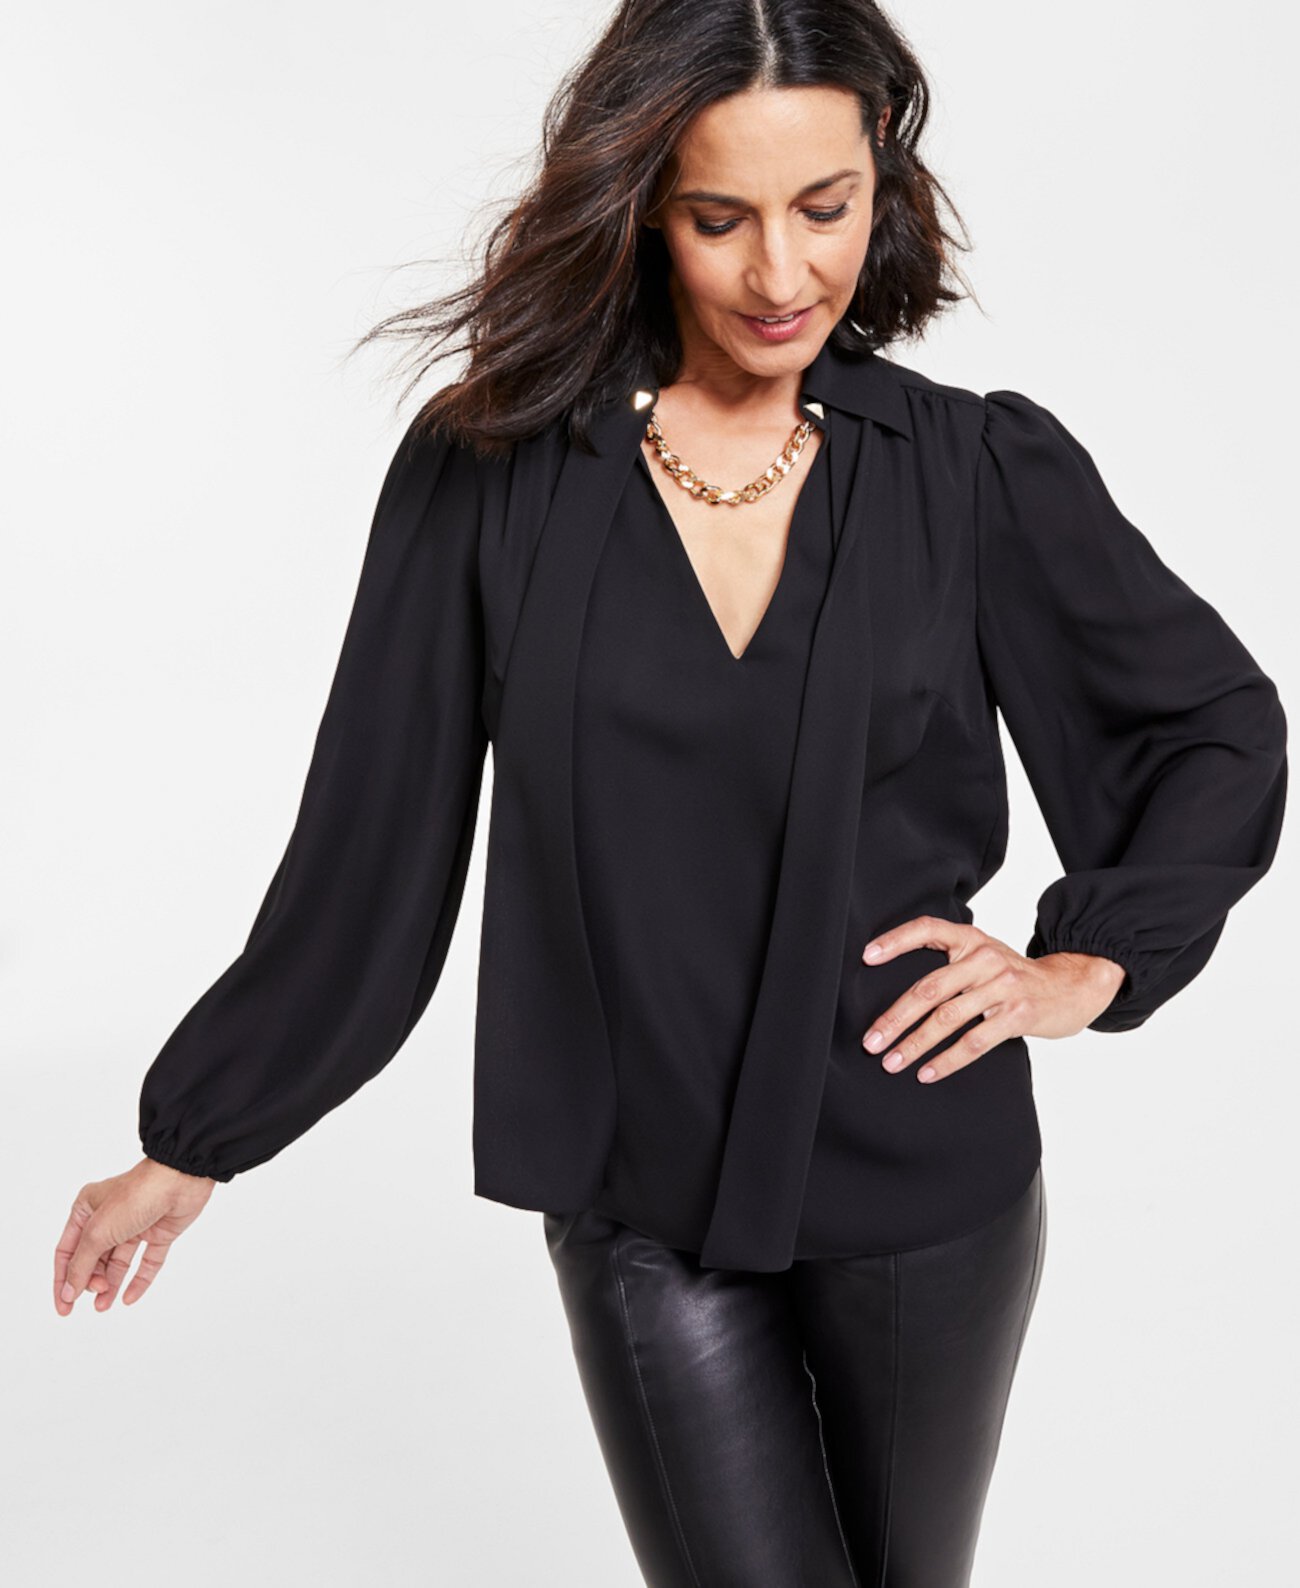 Женская блузка с длинными рукавами и цепочкой на воротнике, созданная для Macy's I.N.C. International Concepts